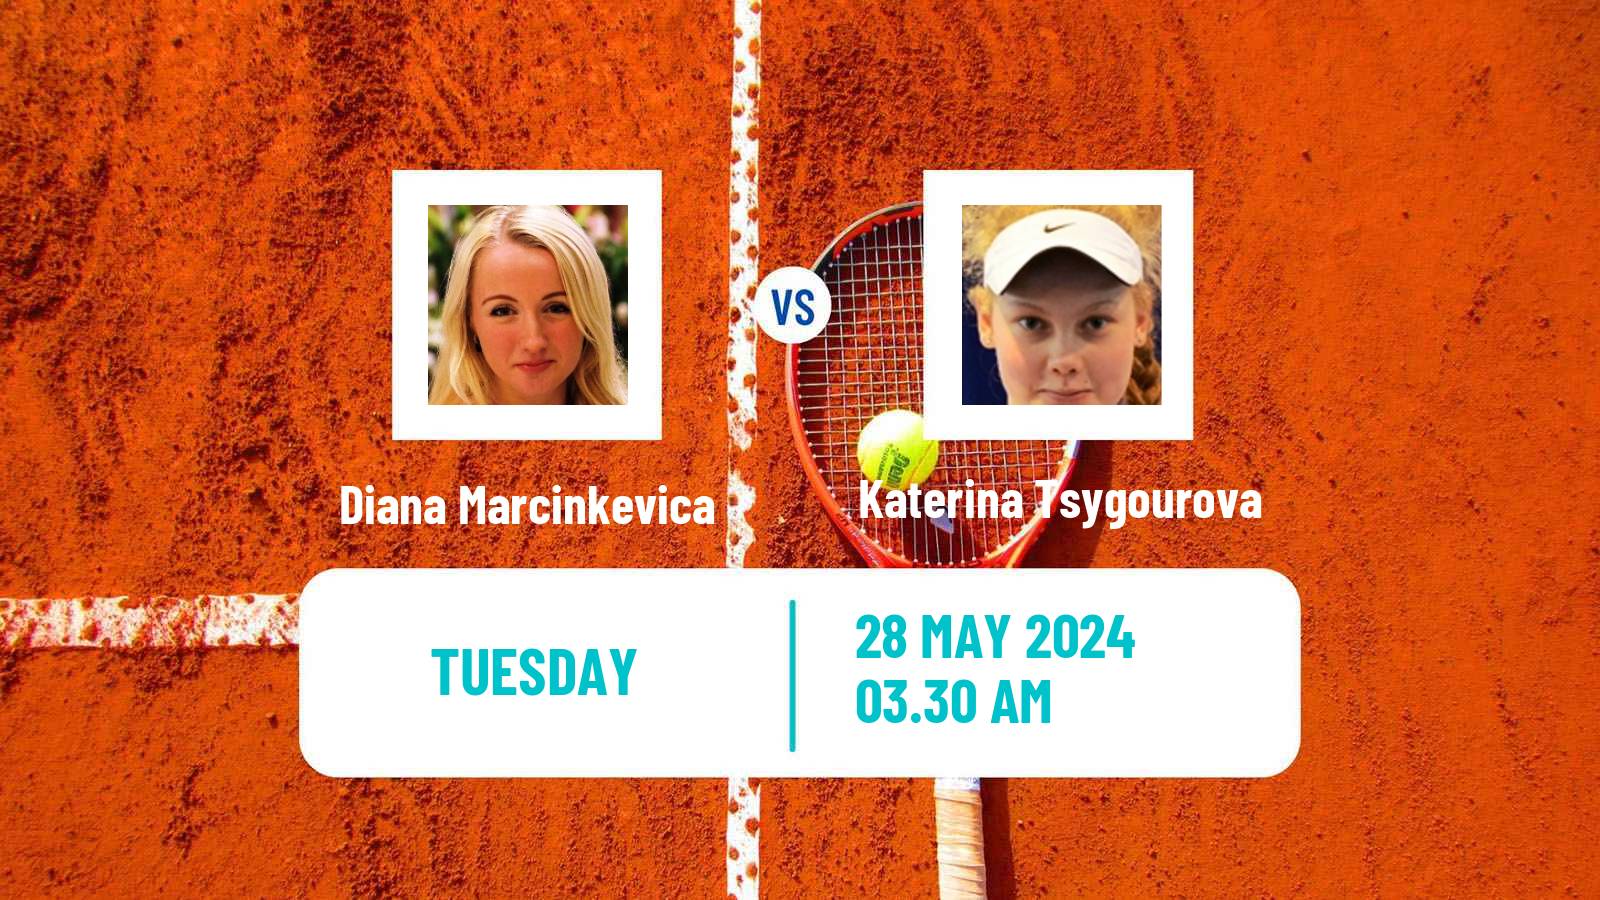 Tennis ITF W35 Klagenfurt Women Diana Marcinkevica - Katerina Tsygourova